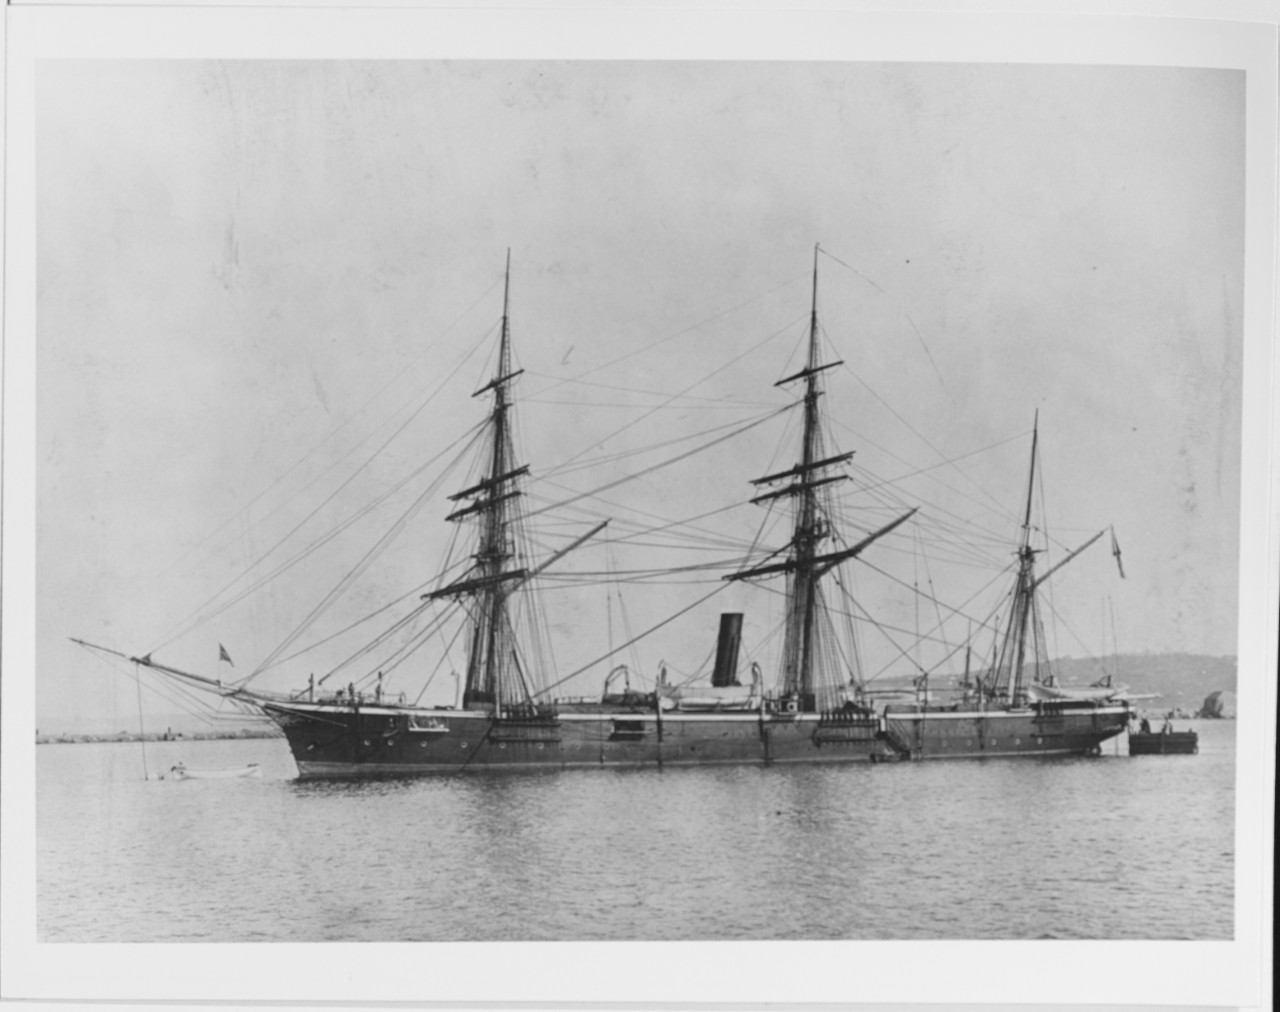 PLASTOUN (Russian Cruiser, circa 1875-1900)